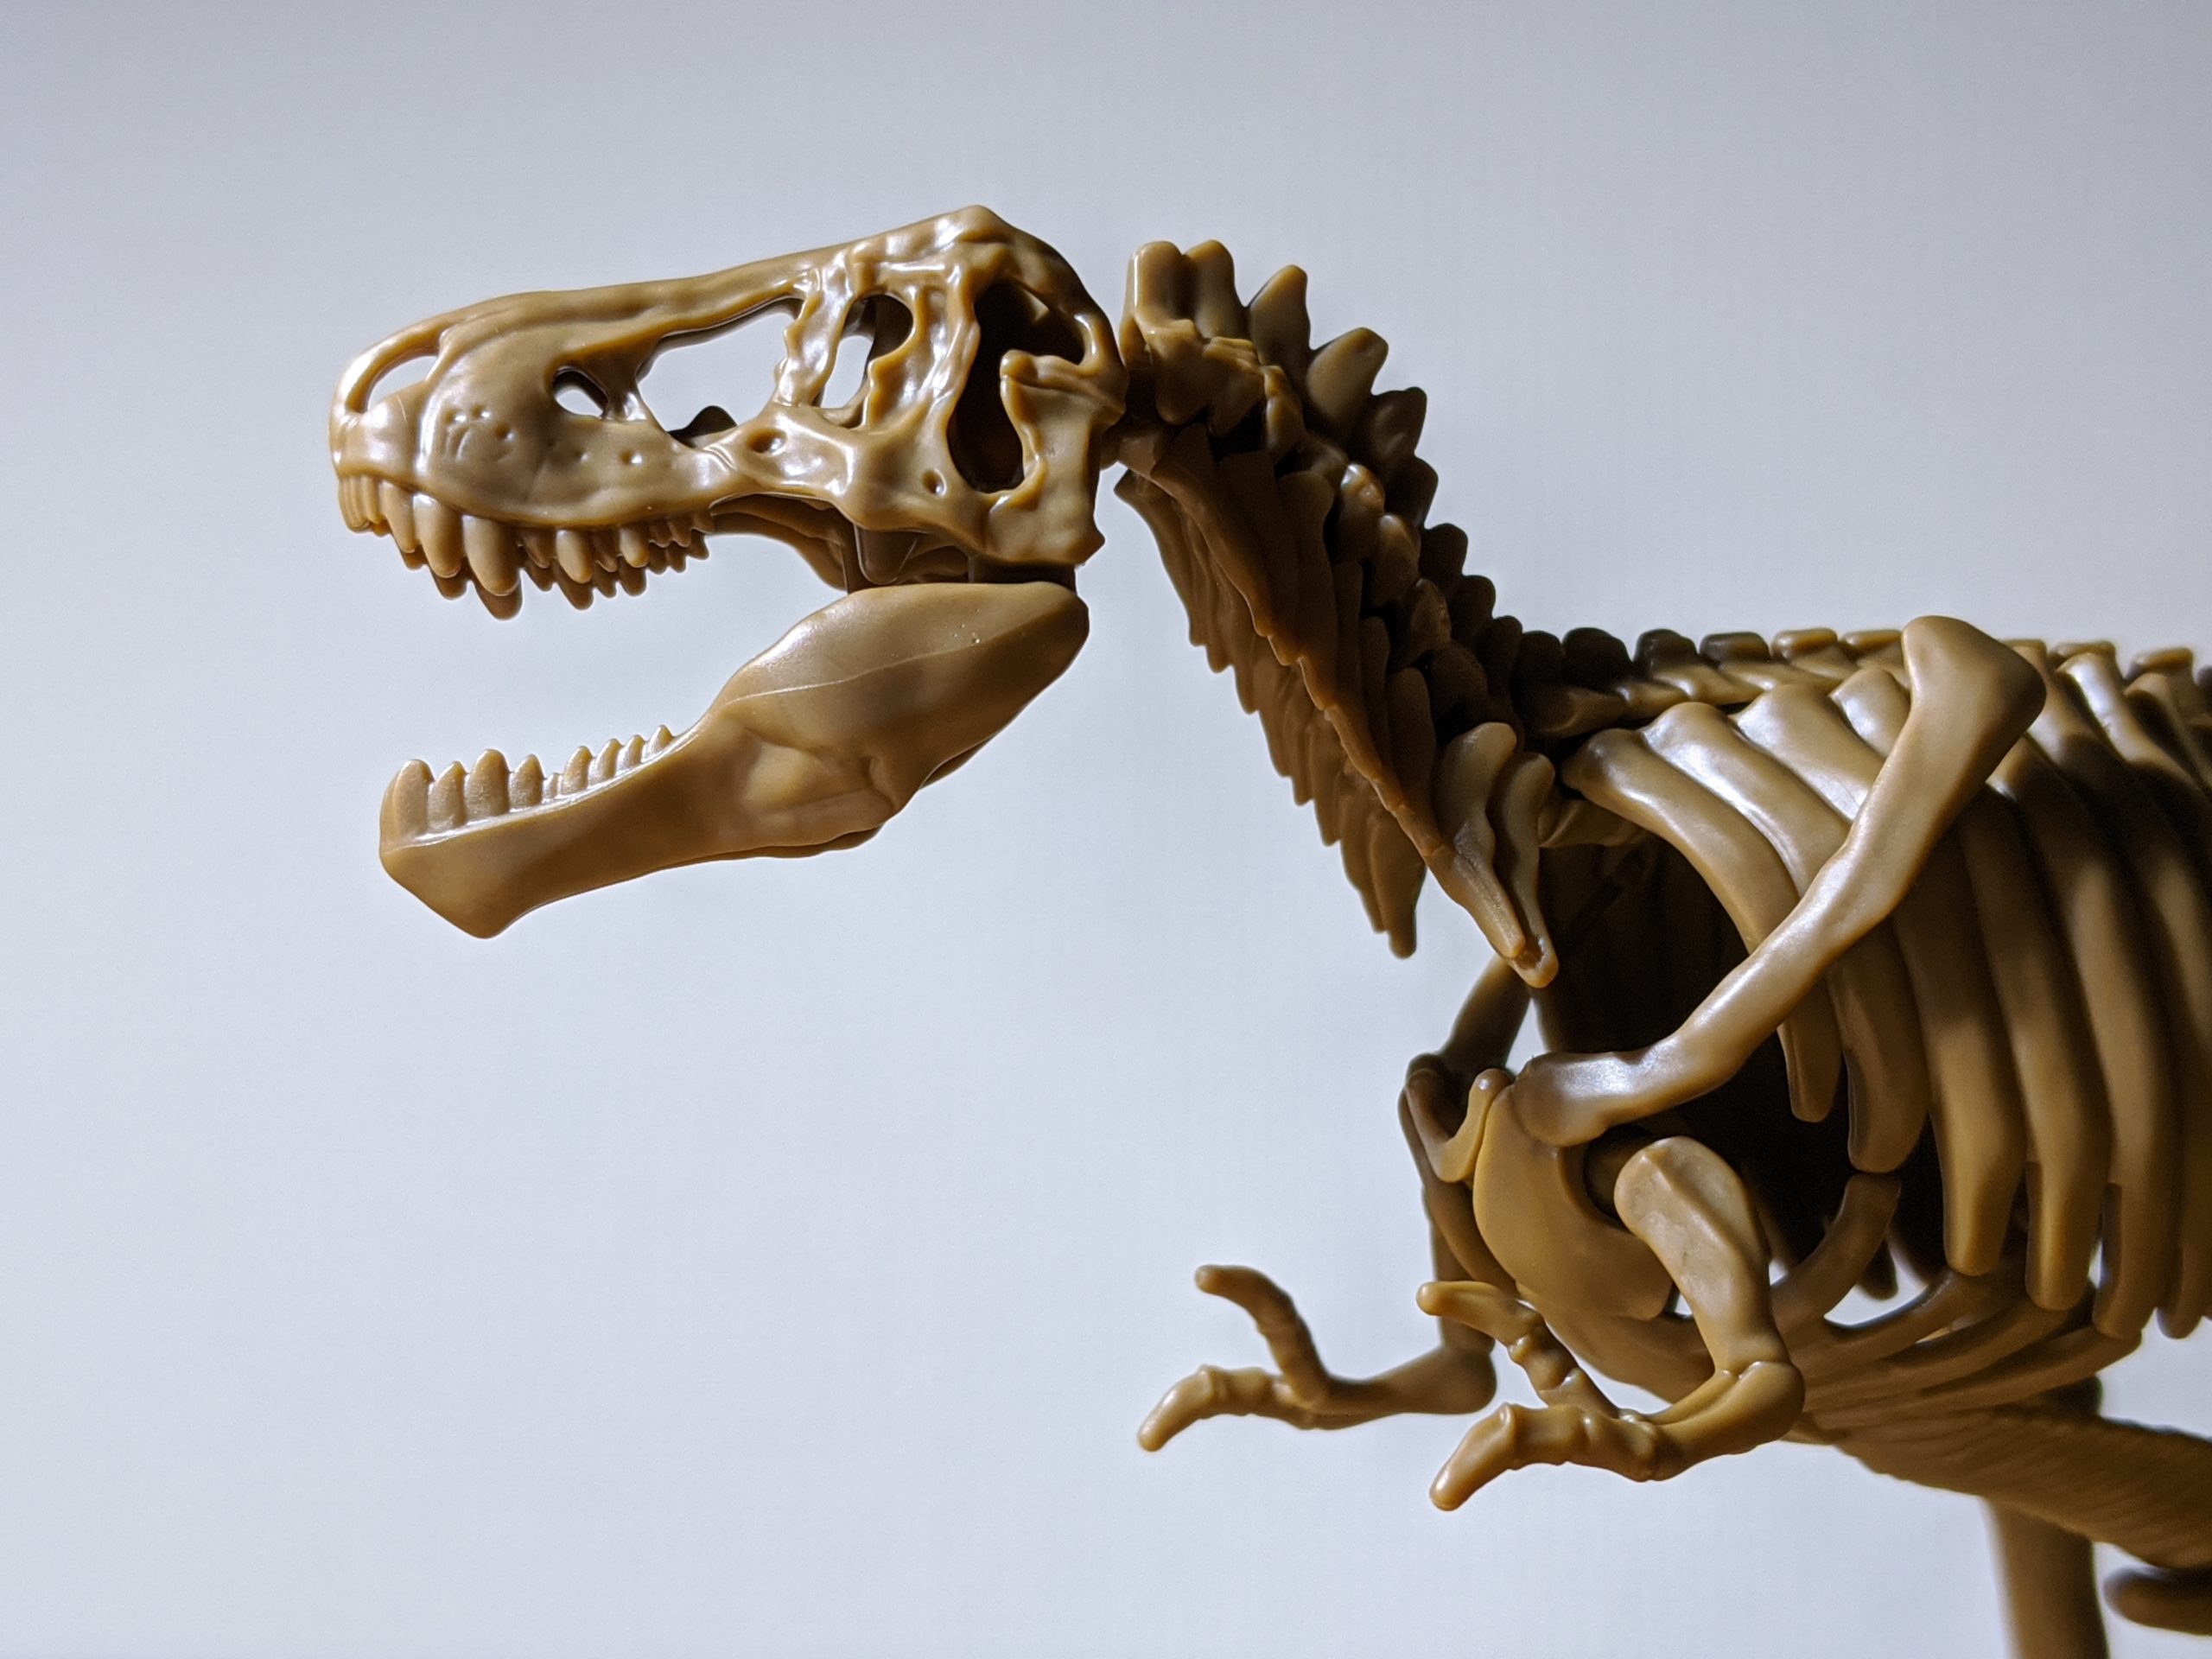 小学8年生 付録 ティラノサウルス全身骨格 頭部